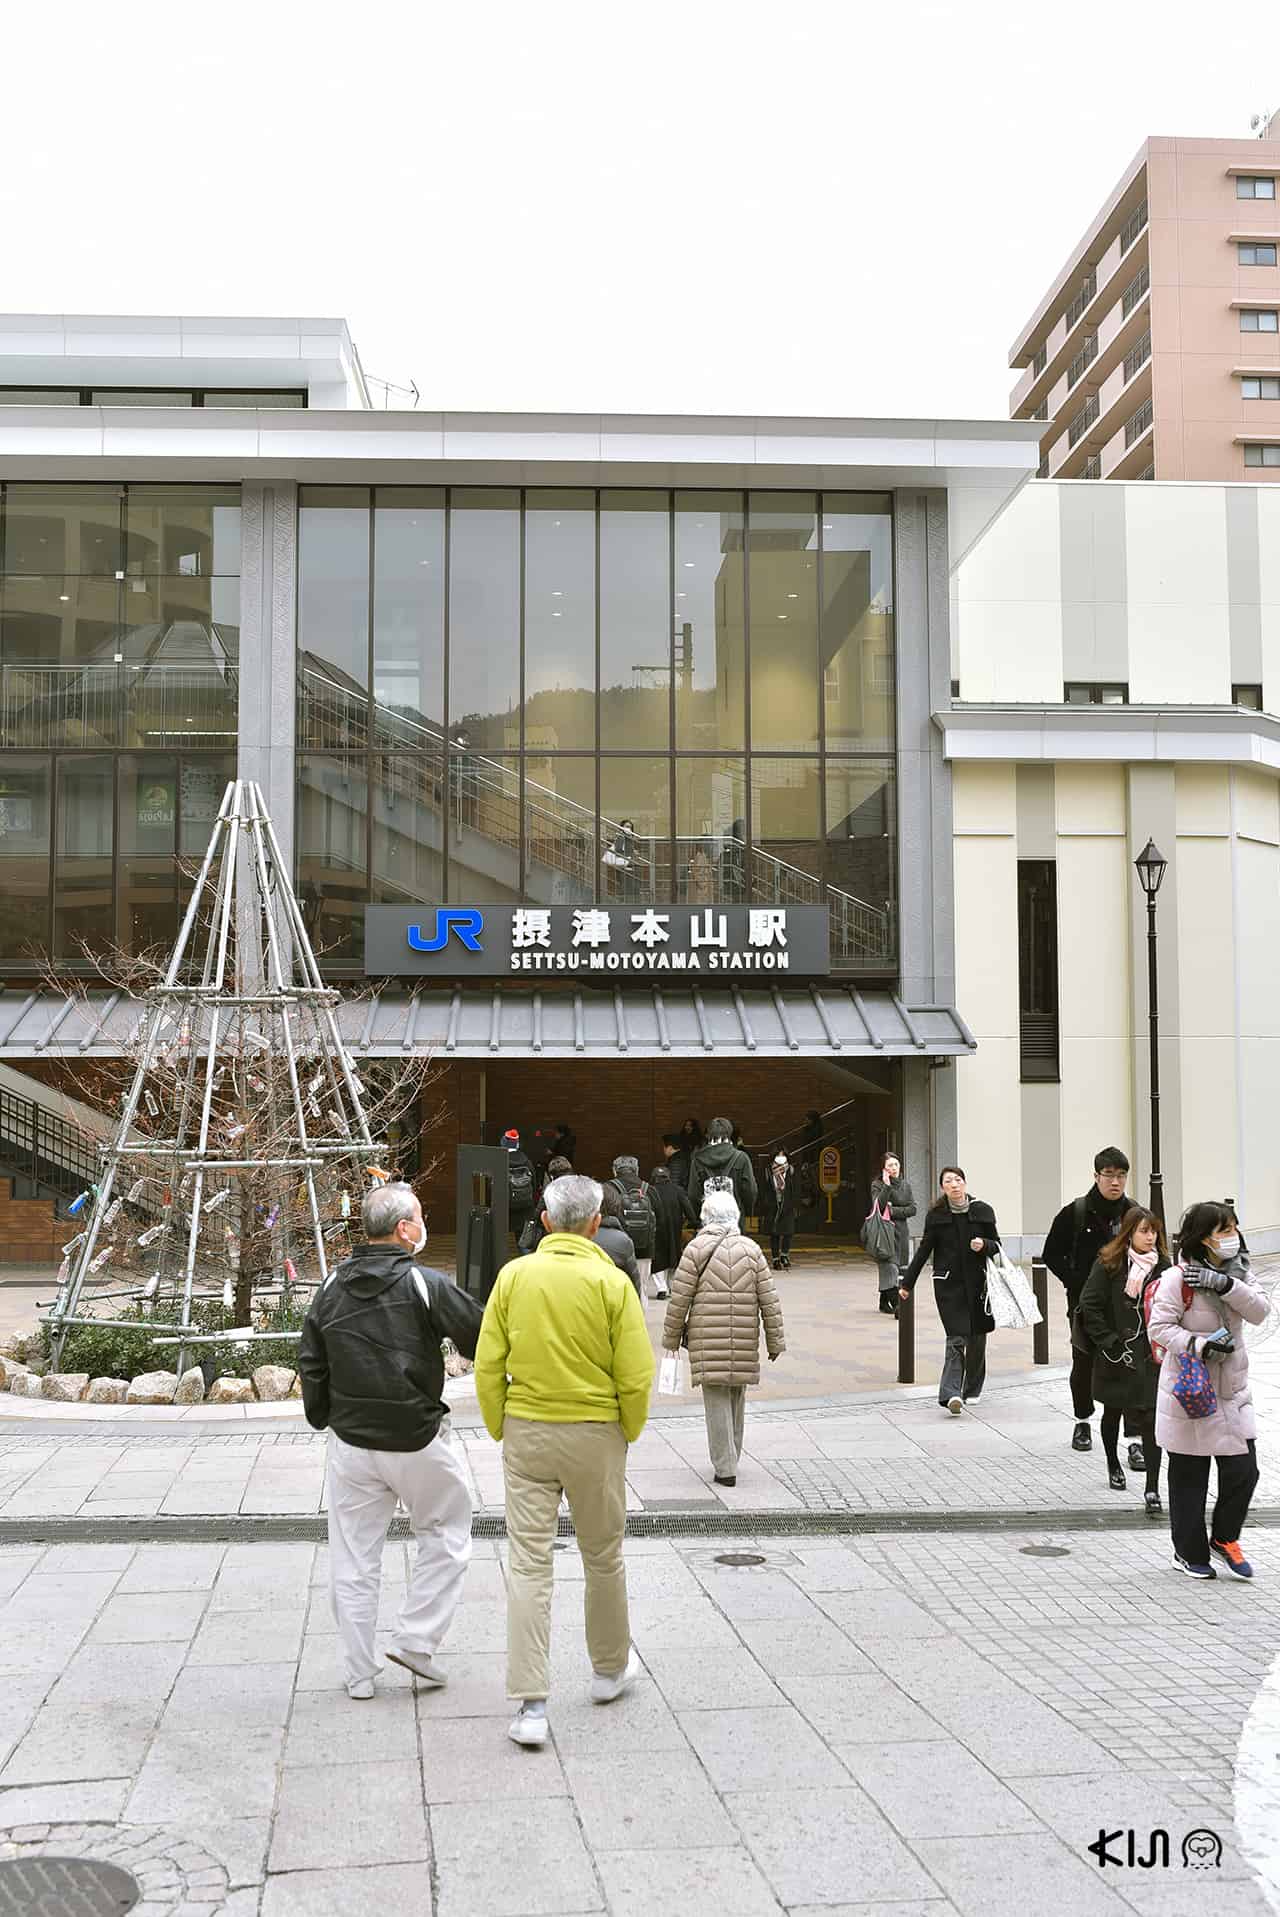 สถานีรถไฟ JR Settsu-Motoyama Station